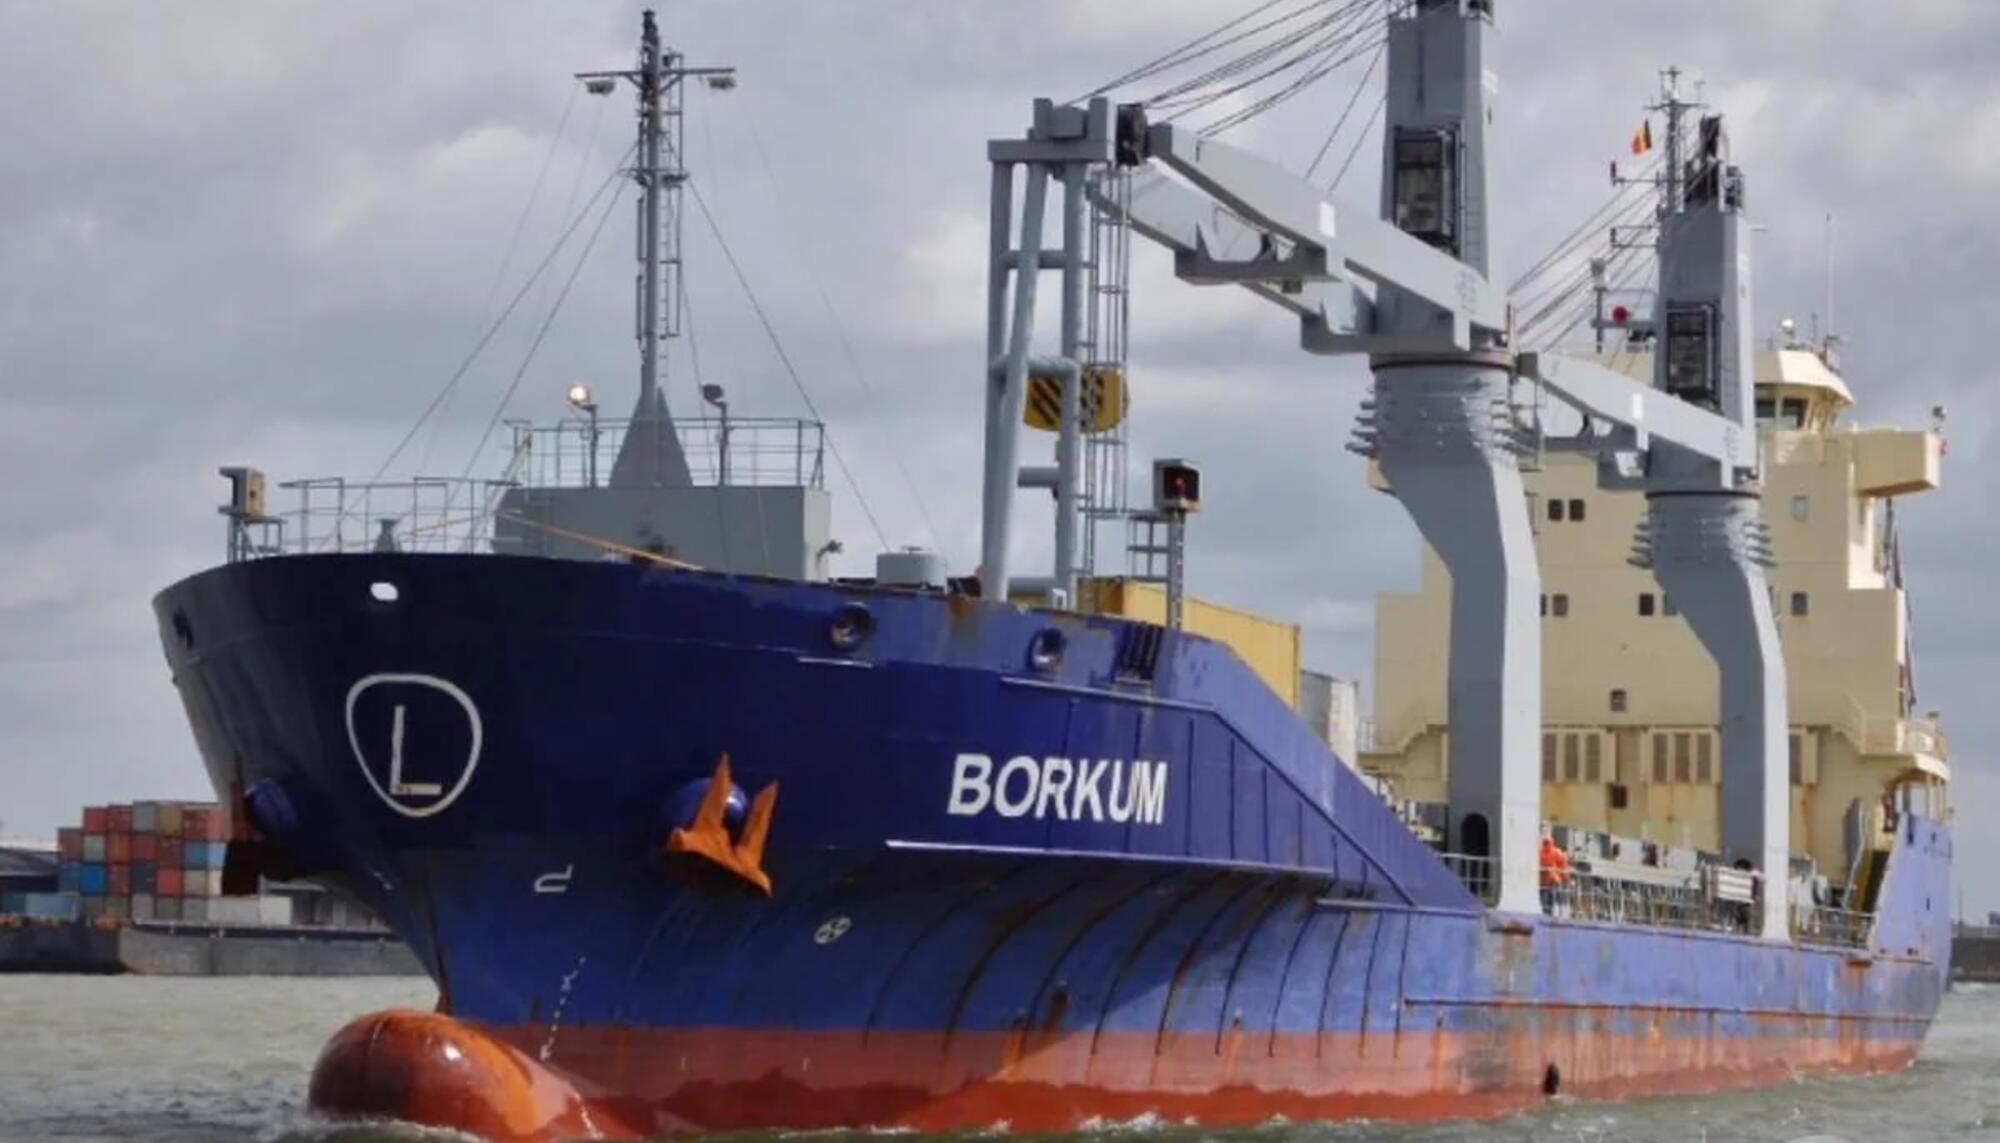 El carguero Borkum ha hecho escala en Cartagena. Según la Rescop, el destino final de su cargamento militar es Israel, después de pasar poner varias escalas.